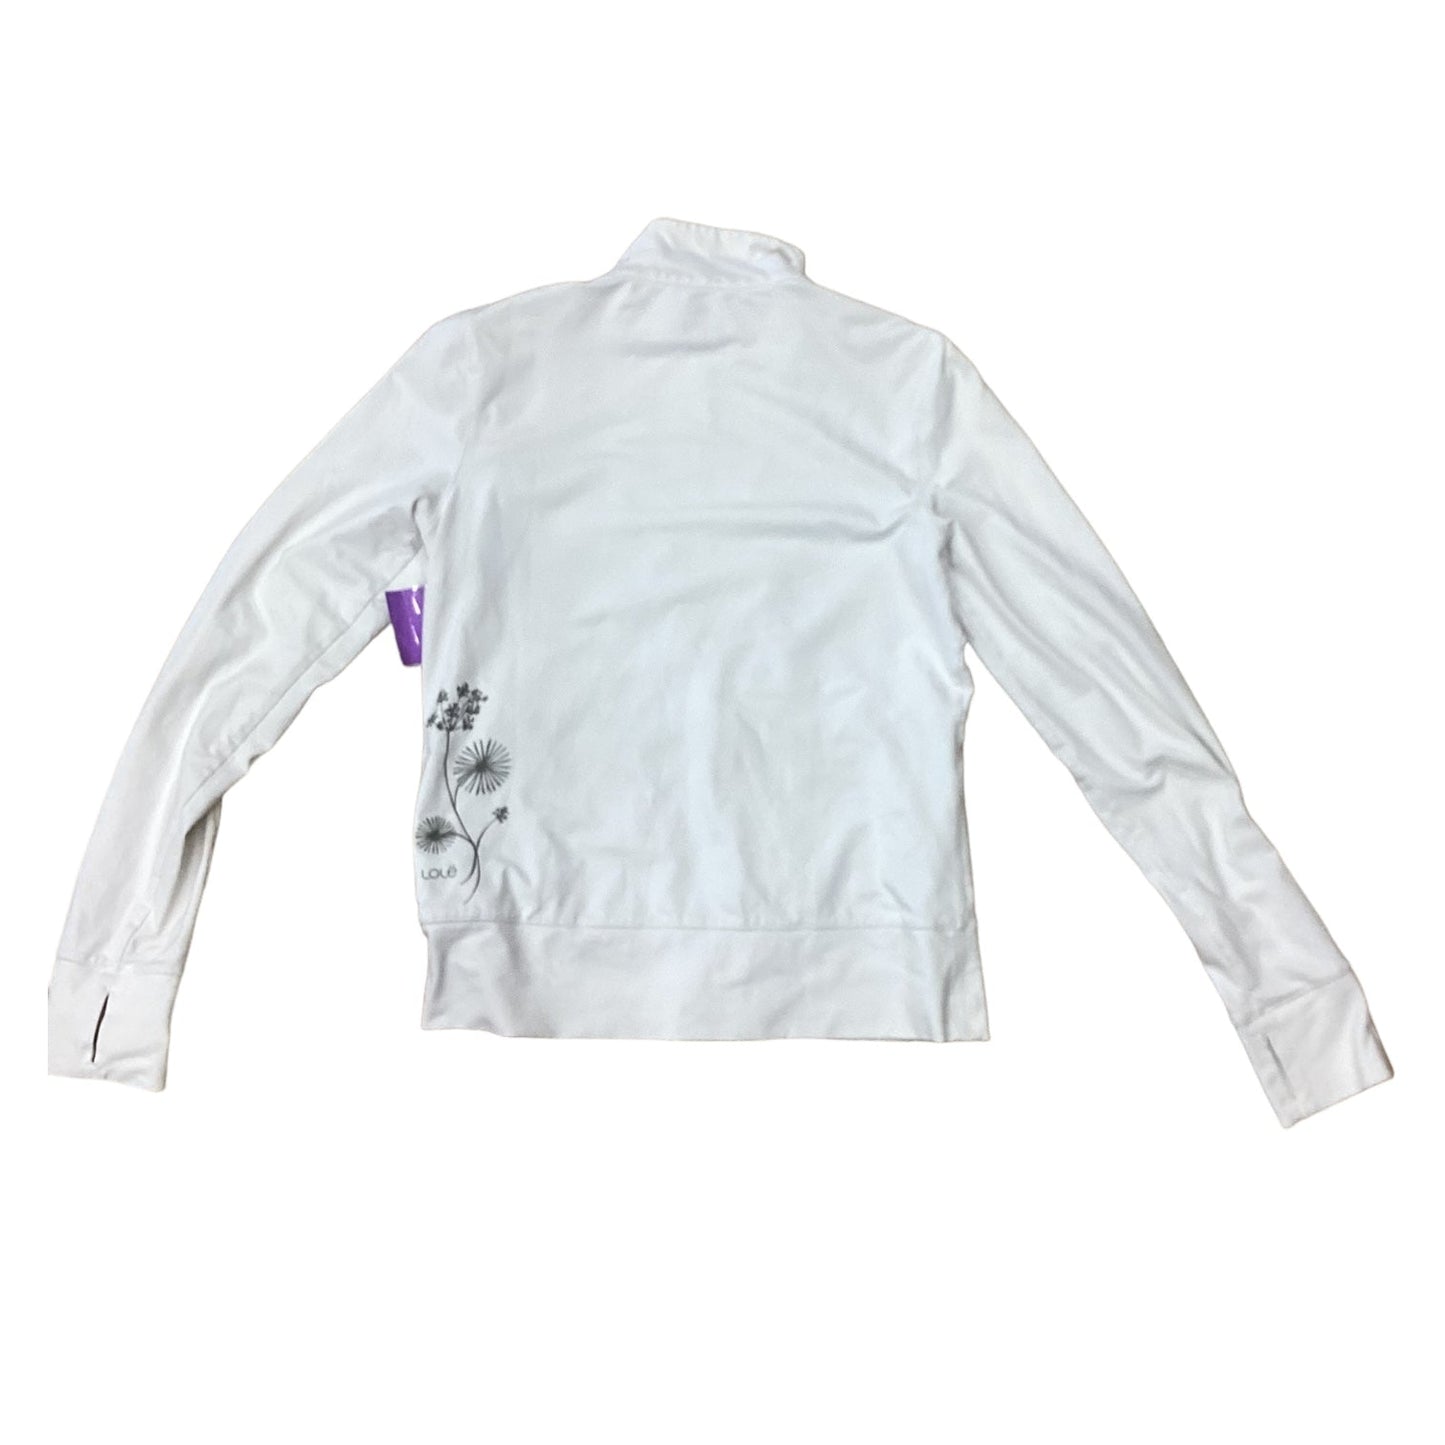 White Athletic Jacket Lole, Size M